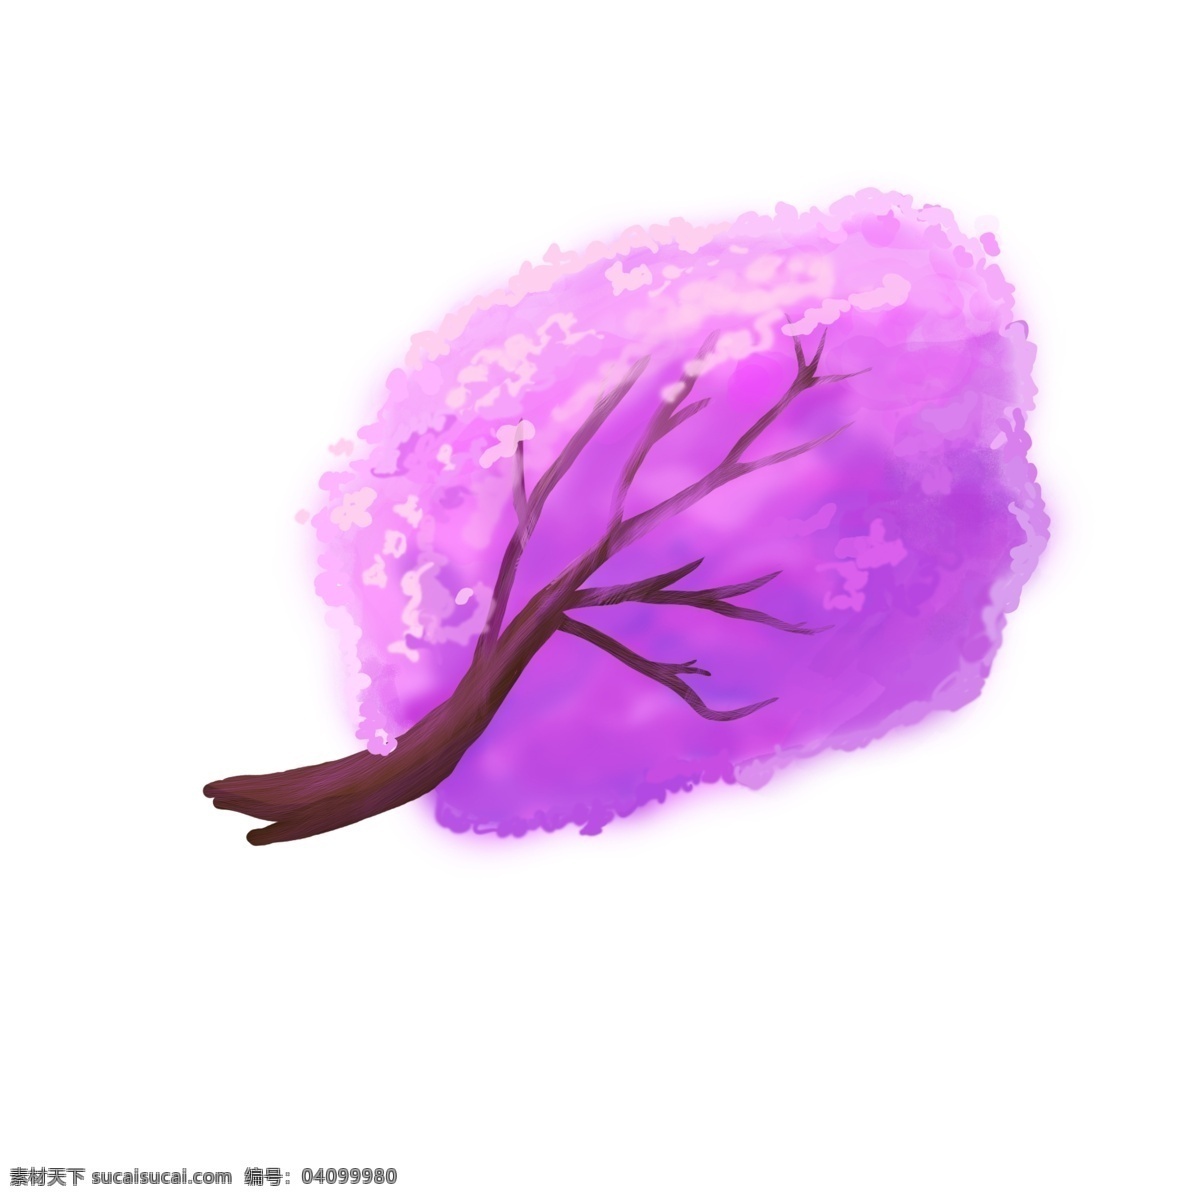 枝 三月 樱花 日本动漫 风格 樱花树枝 蓝紫 色调 水彩风格的 梦幻风 冷色调